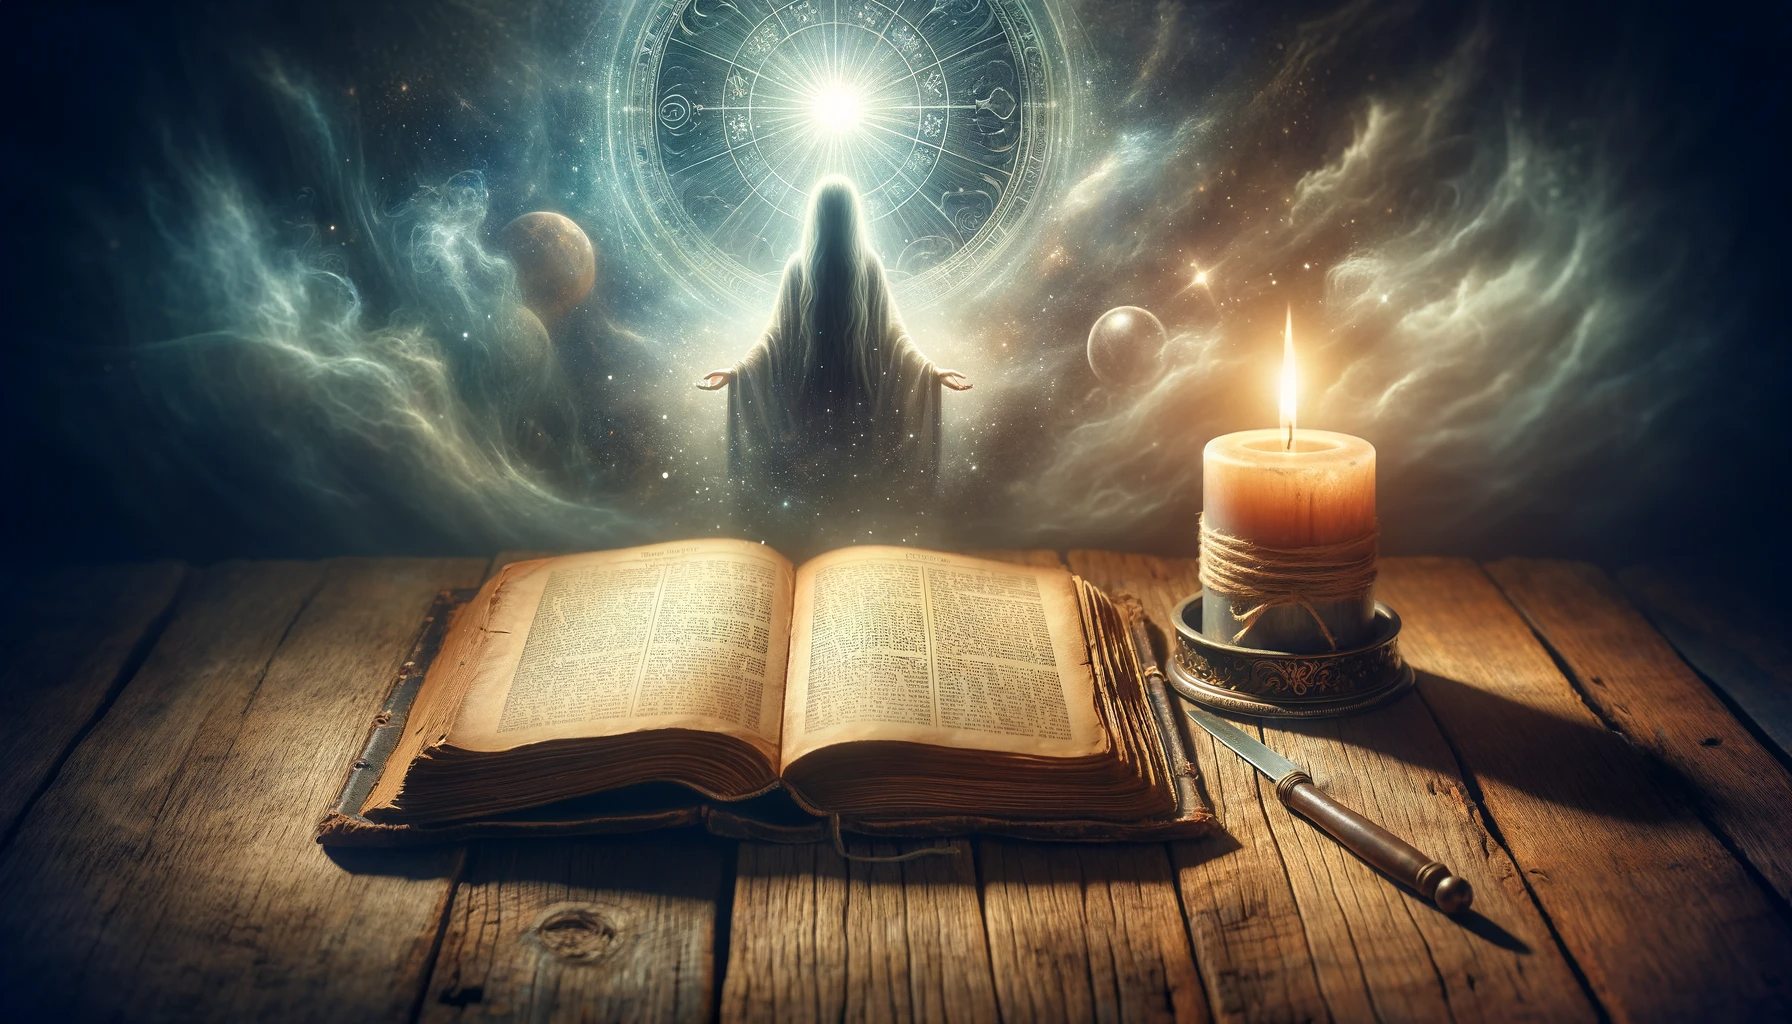 Imagem de um livro antigo aberto sobre mesa de madeira com vela acesa ao lado, simbolizando a 'Prece de Cáritas' e a espiritualidade na Doutrina Espírita.